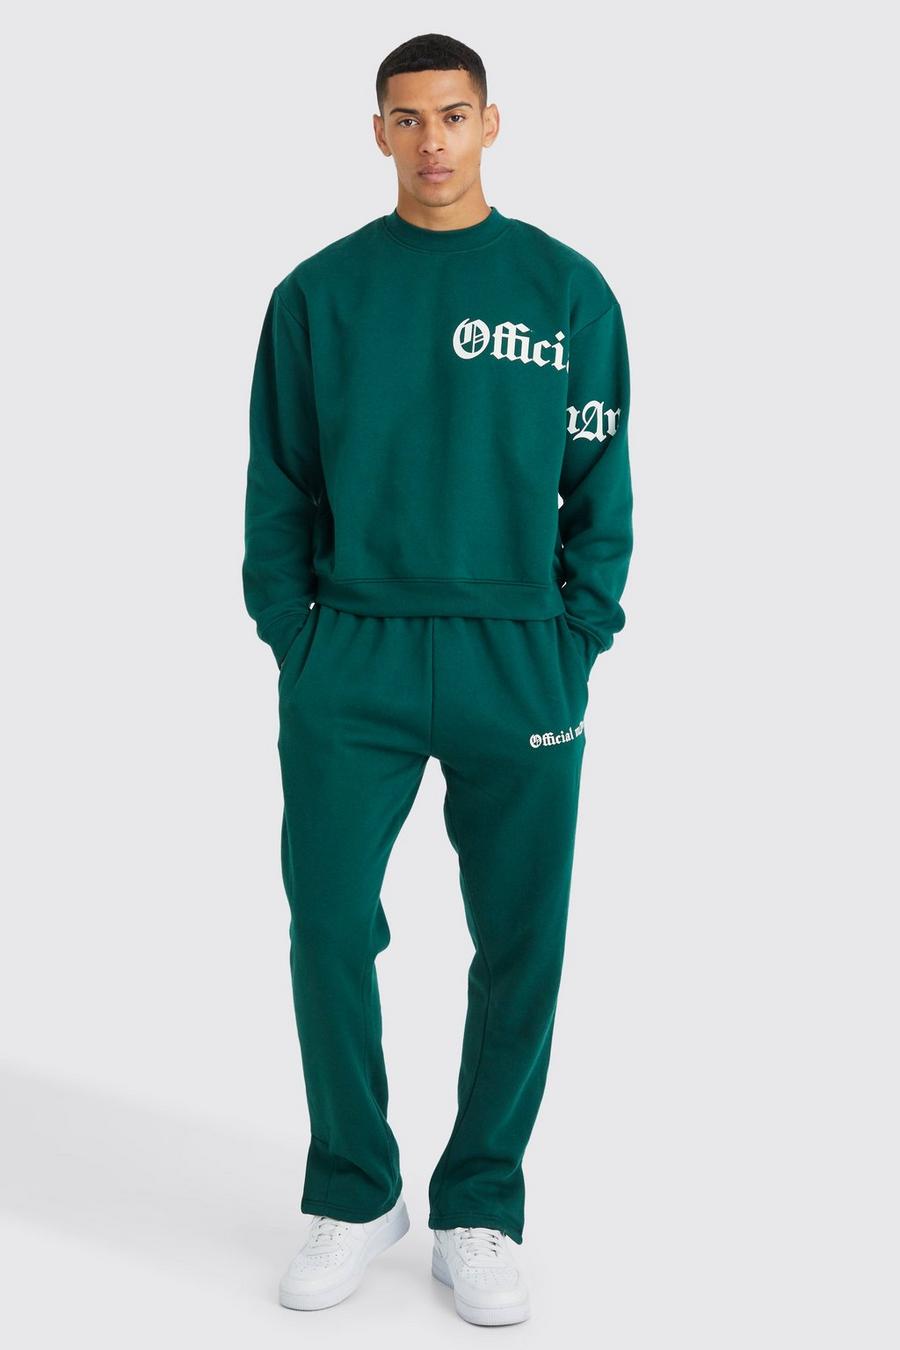 Kastiger Oversize Sweatshirt-Trainingsanzug mit Slogan, Forest green